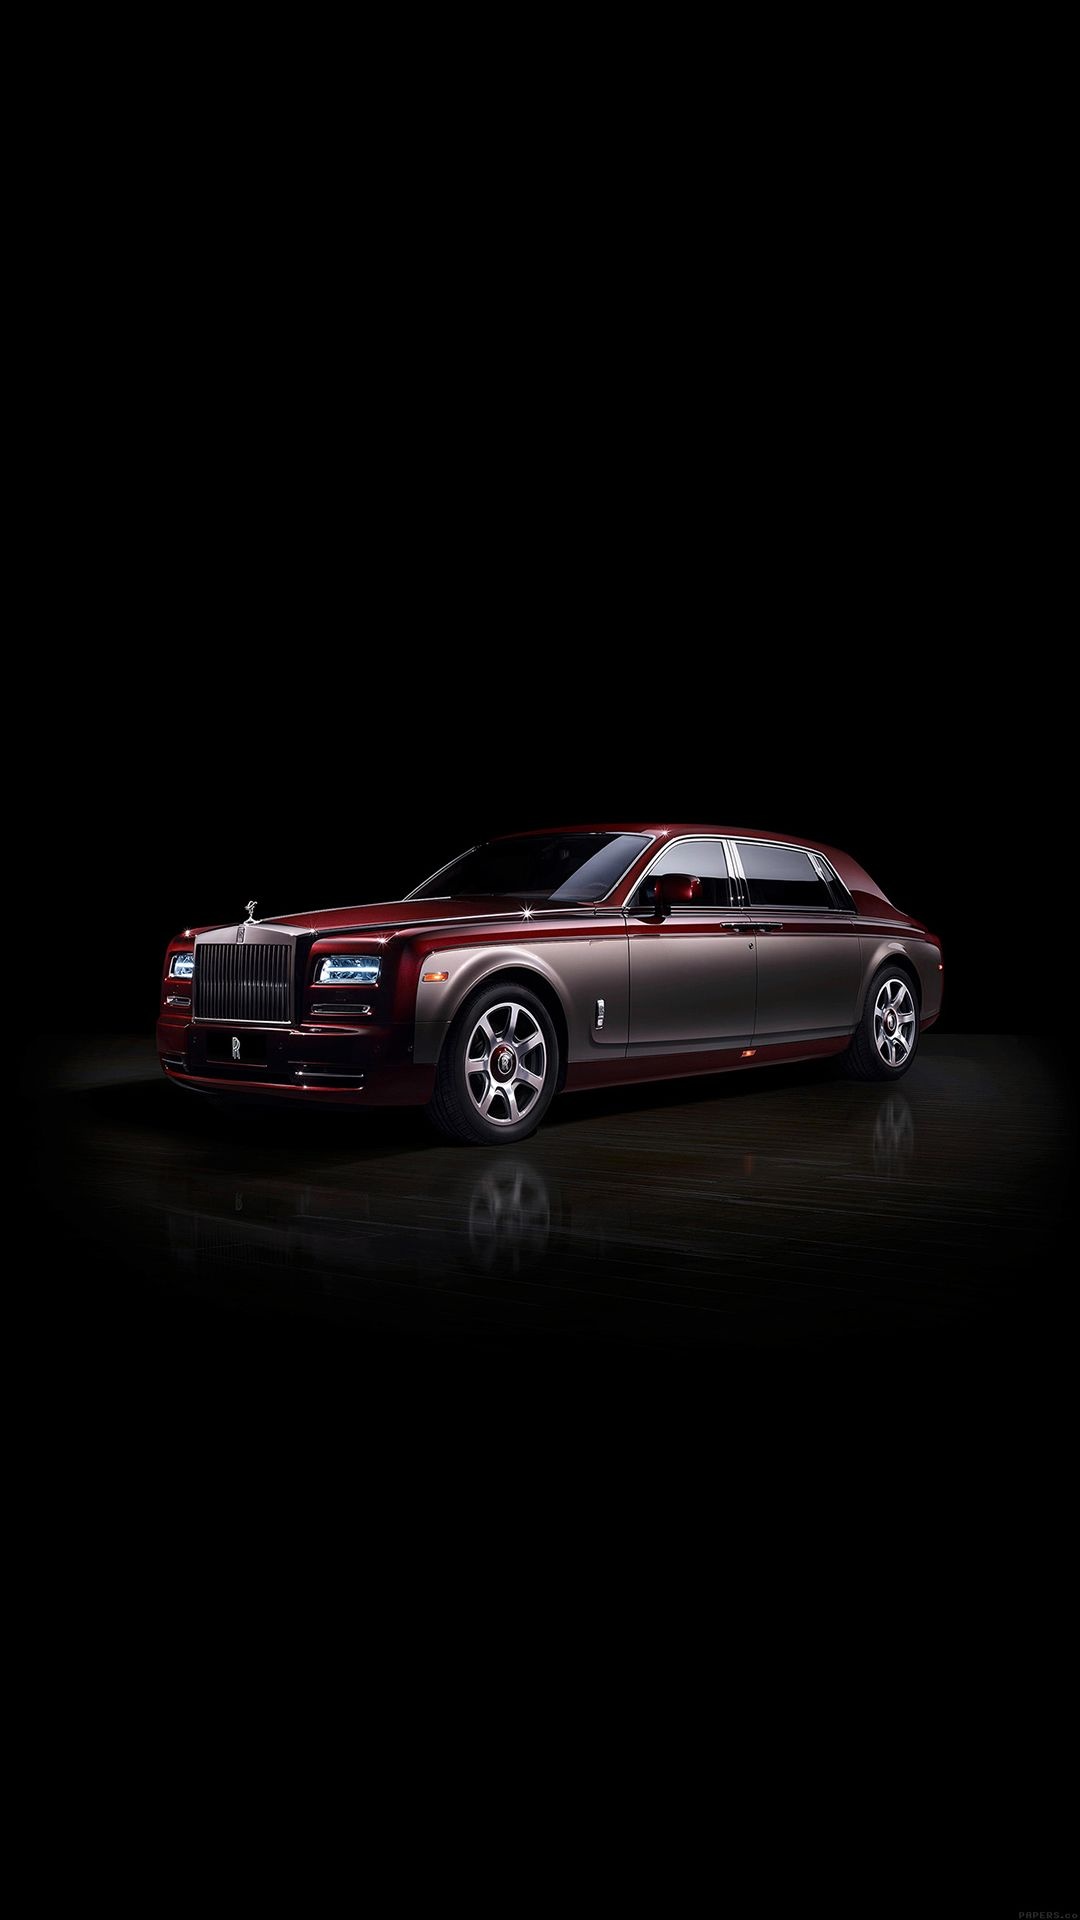 Rolls-Royce Phantom, Opulent luxury, Pinnacle of elegance, iPhone wallpaper download, 1080x1920 Full HD Phone